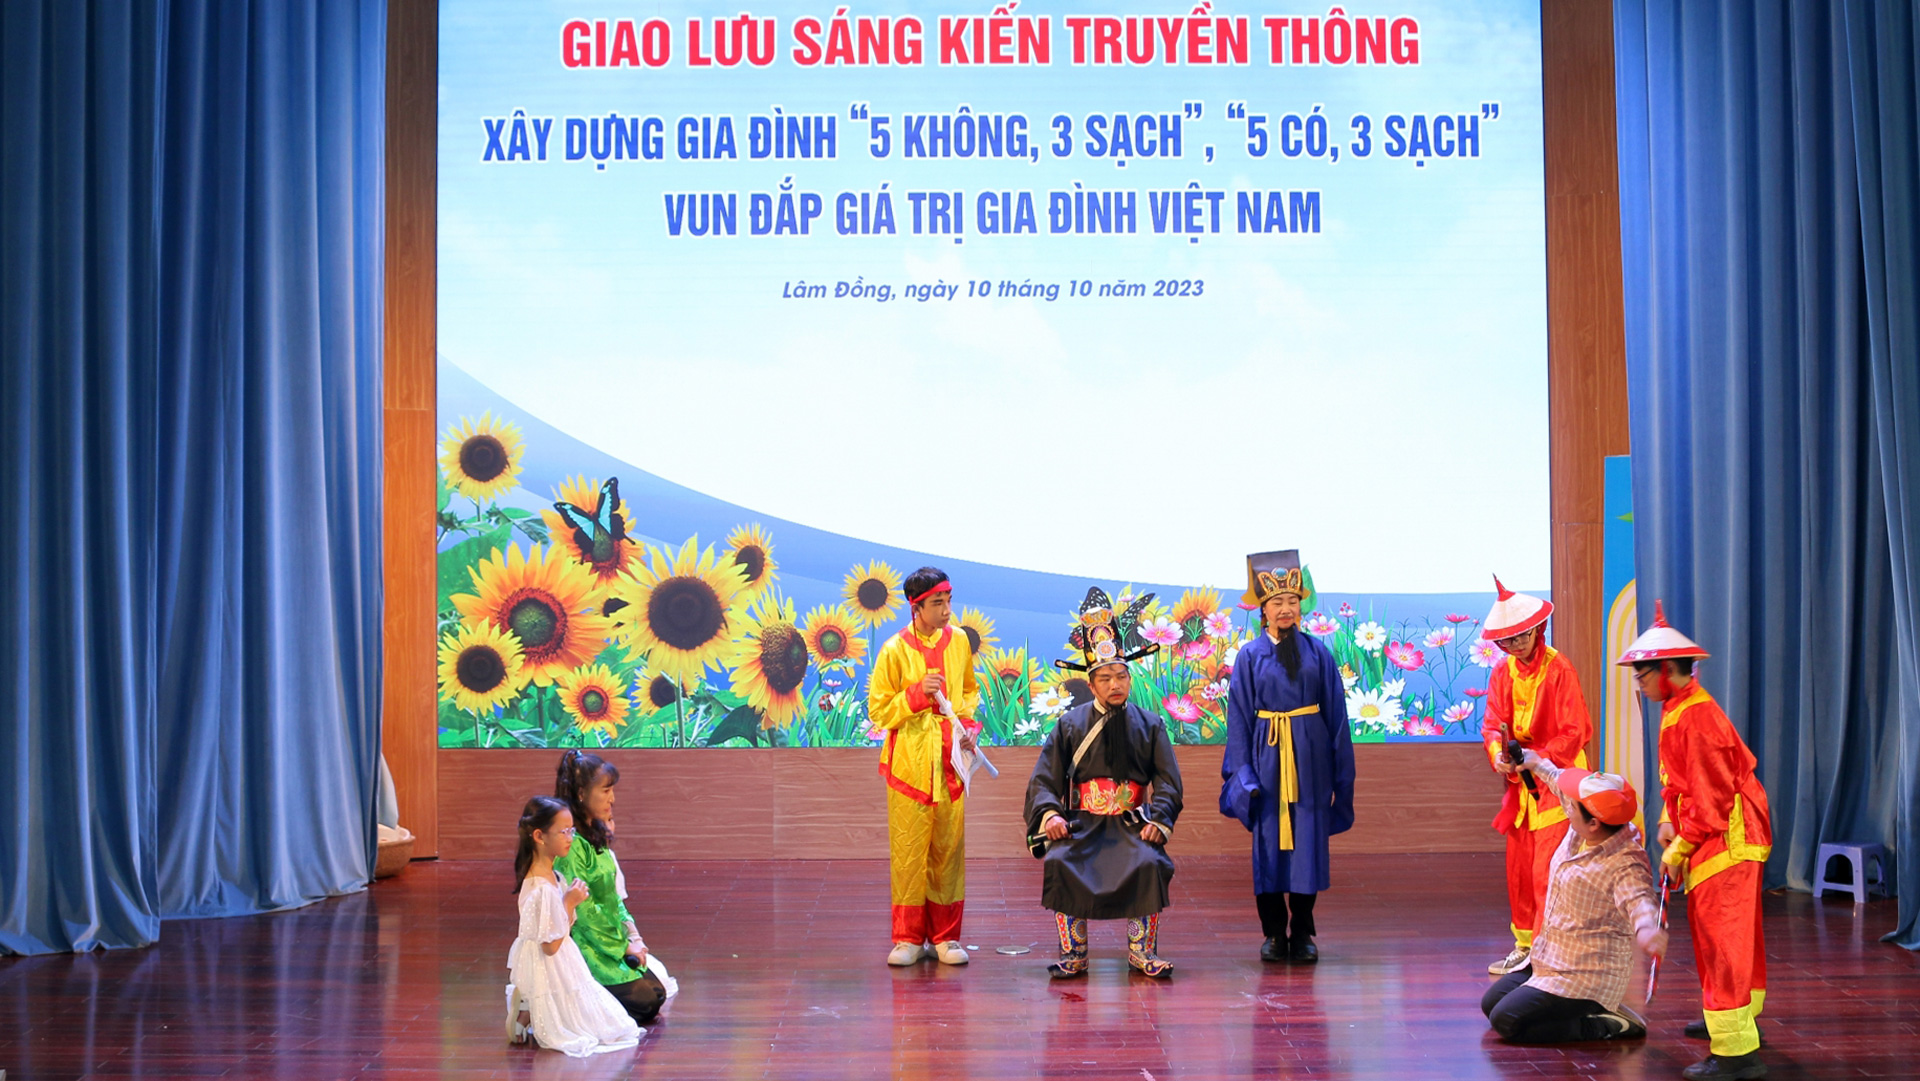 Các tiểu phẩm với những thông điệp xây dựng gia đình không bạo lực, cùng nhau vun đắp và tôn vinh những giá trị tốt đẹp của gia đình Việt Nam